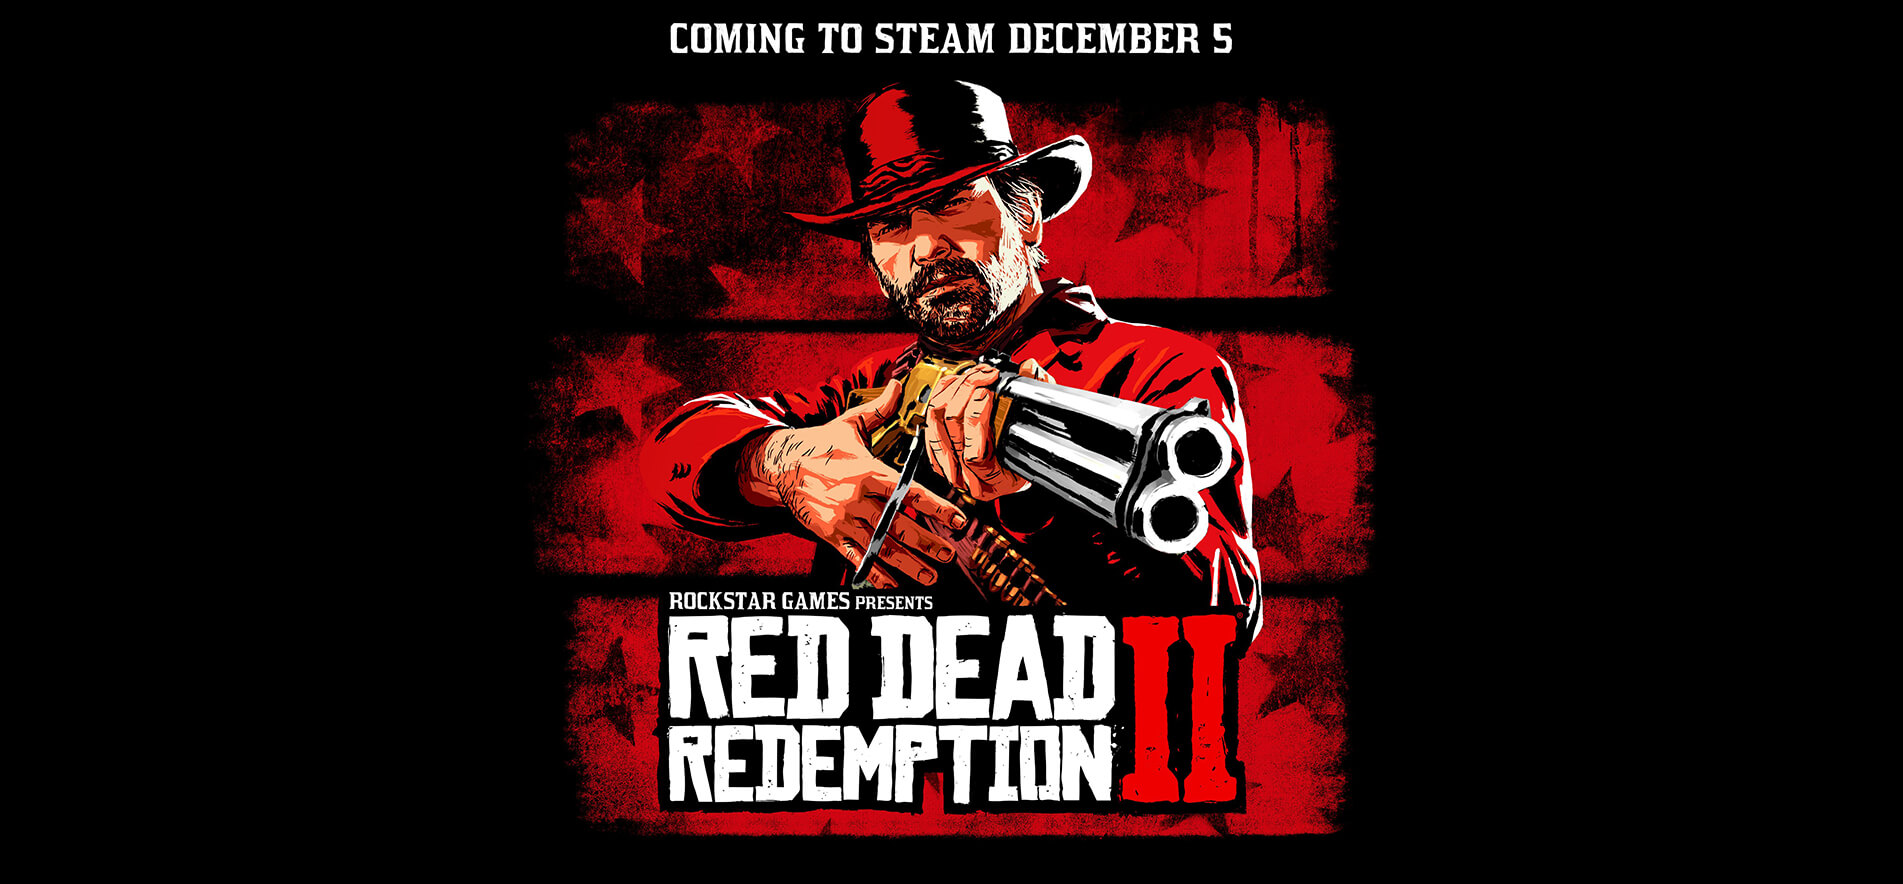 Steam-версия Red Dead Redemption 2 выйдет 5 декабря (фото)